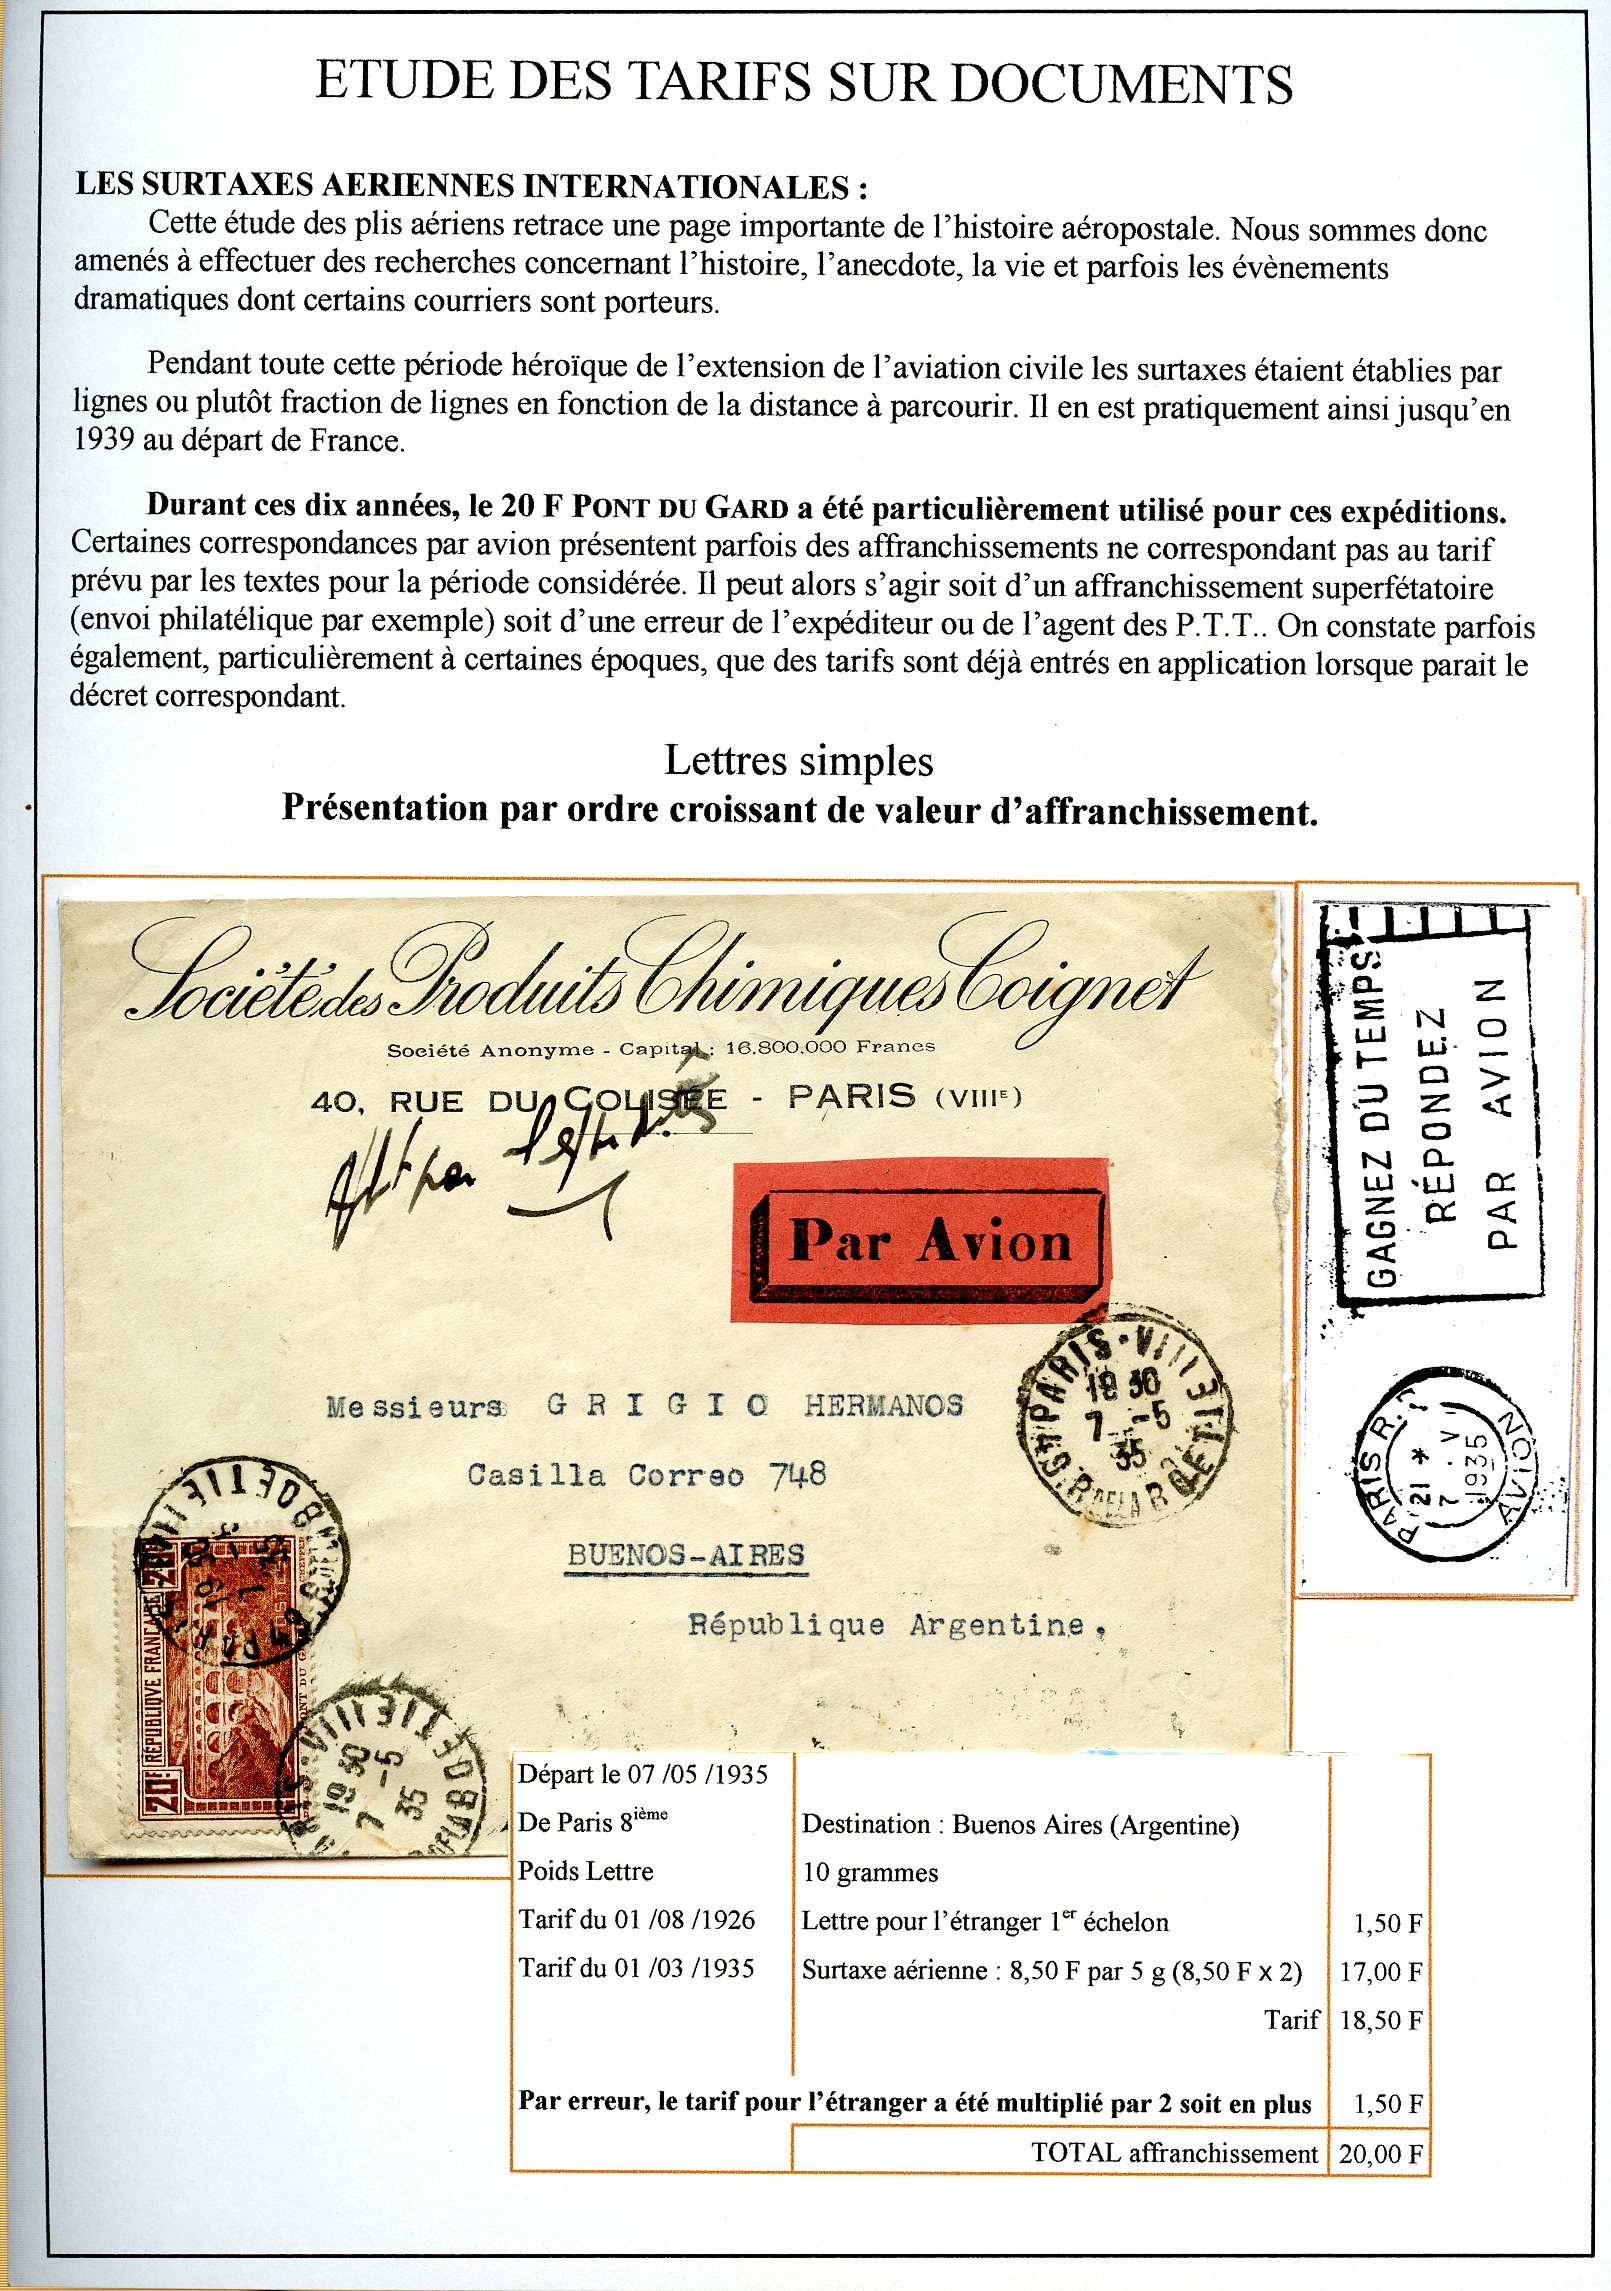 Les tarifs et les diff��rentes utilisations postales du 20 F. Pont du Gard p. 15